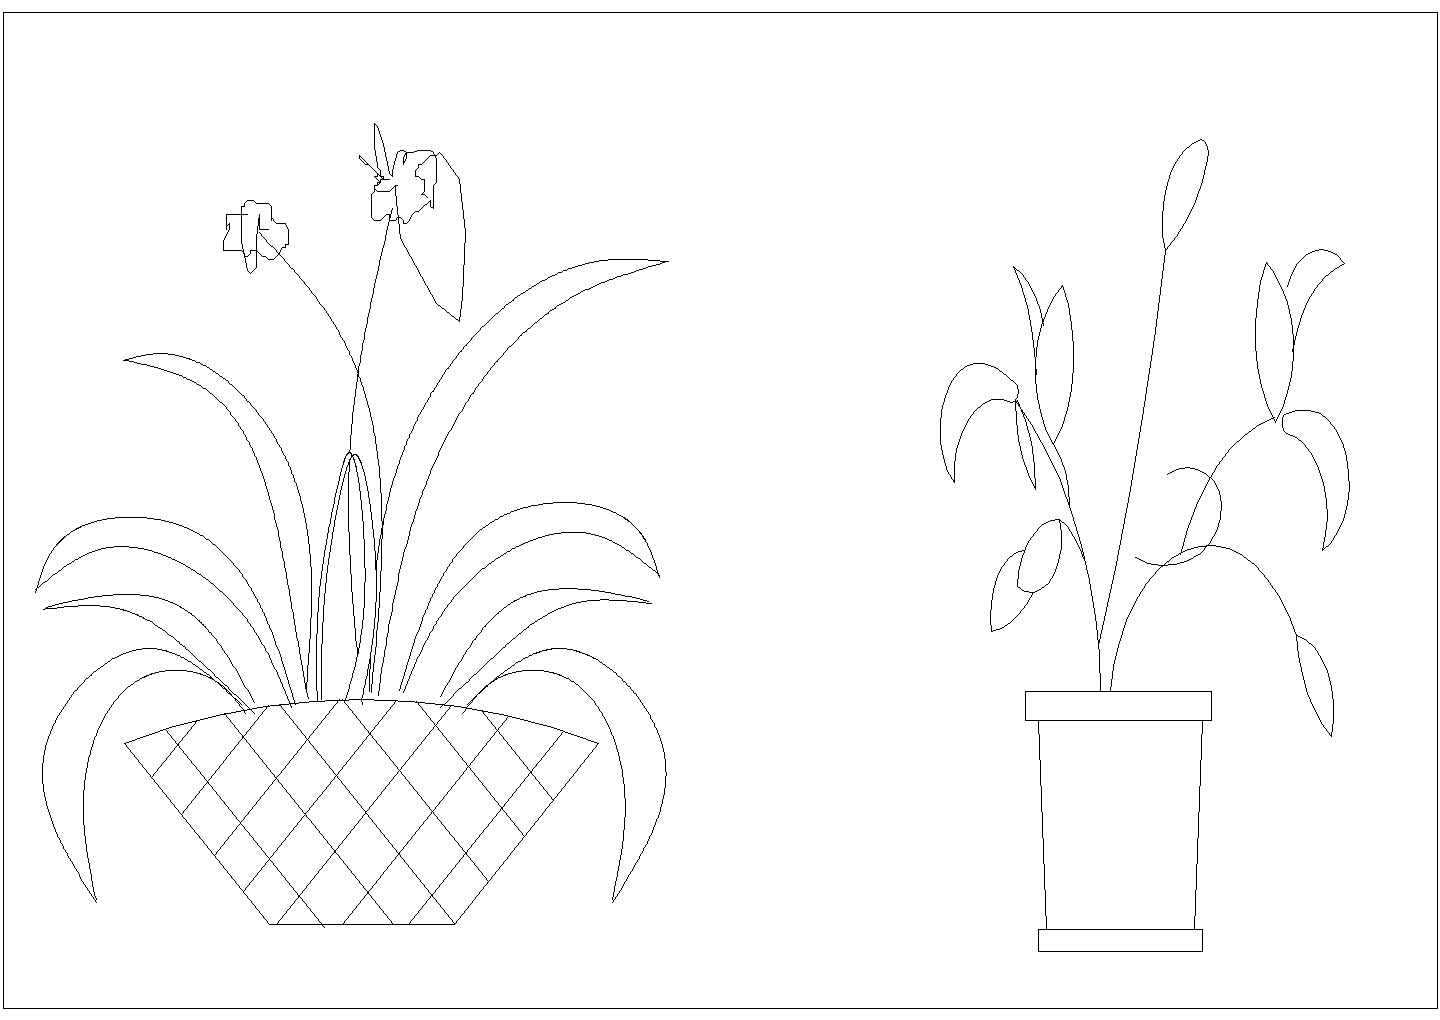 装饰设计室内绿化饰品陈设植物CAD素材图例图库（甲级院设计）